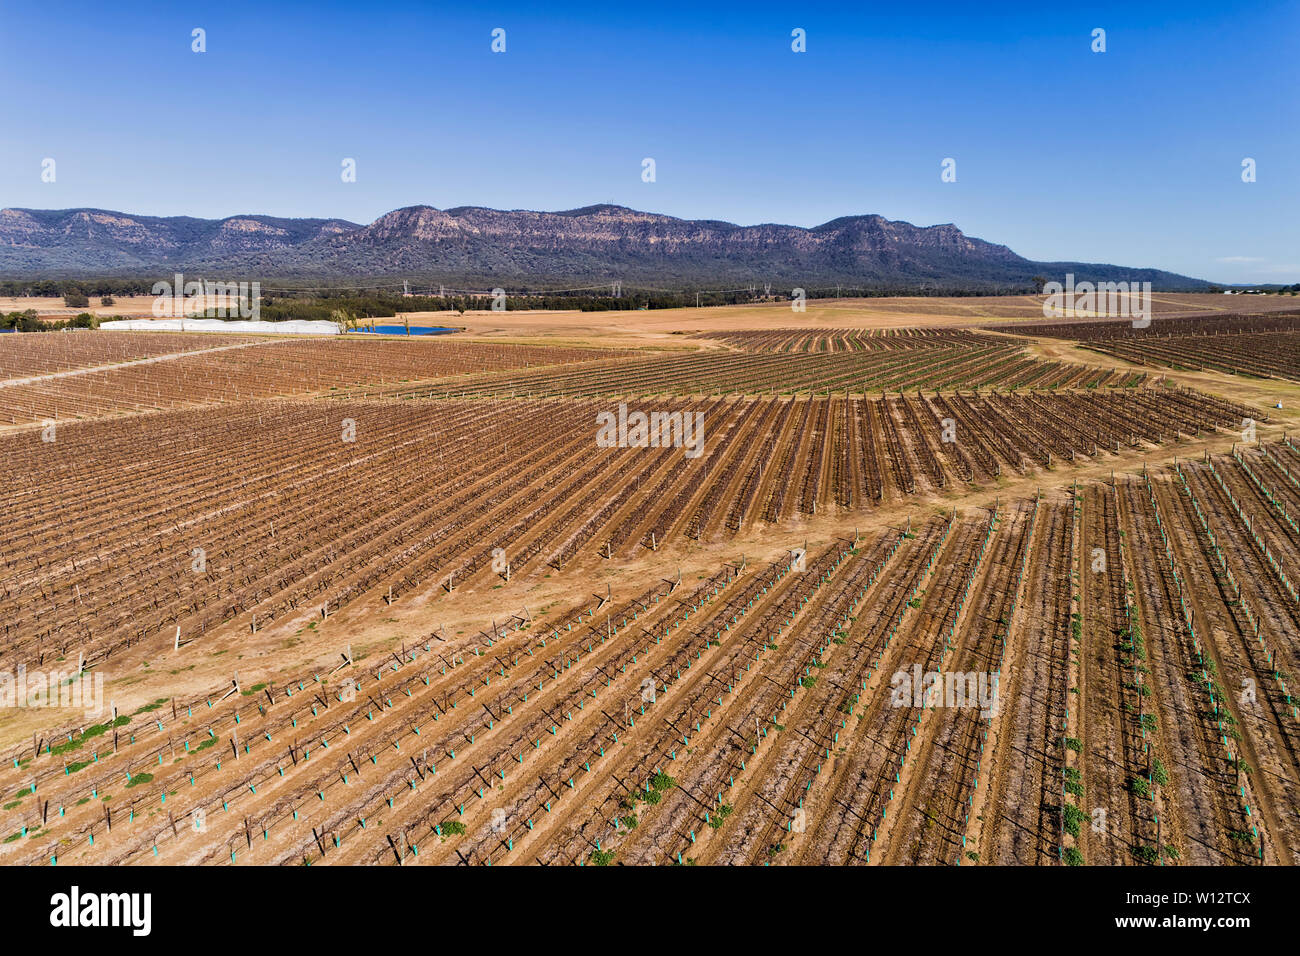 Agronomie und Landwirtschaft in Aktion um Pokolbin Weinberge von Hunter Valley Weinregion in Australien. Antenne erhöhten Blick auf Reihen von growi Stockfoto